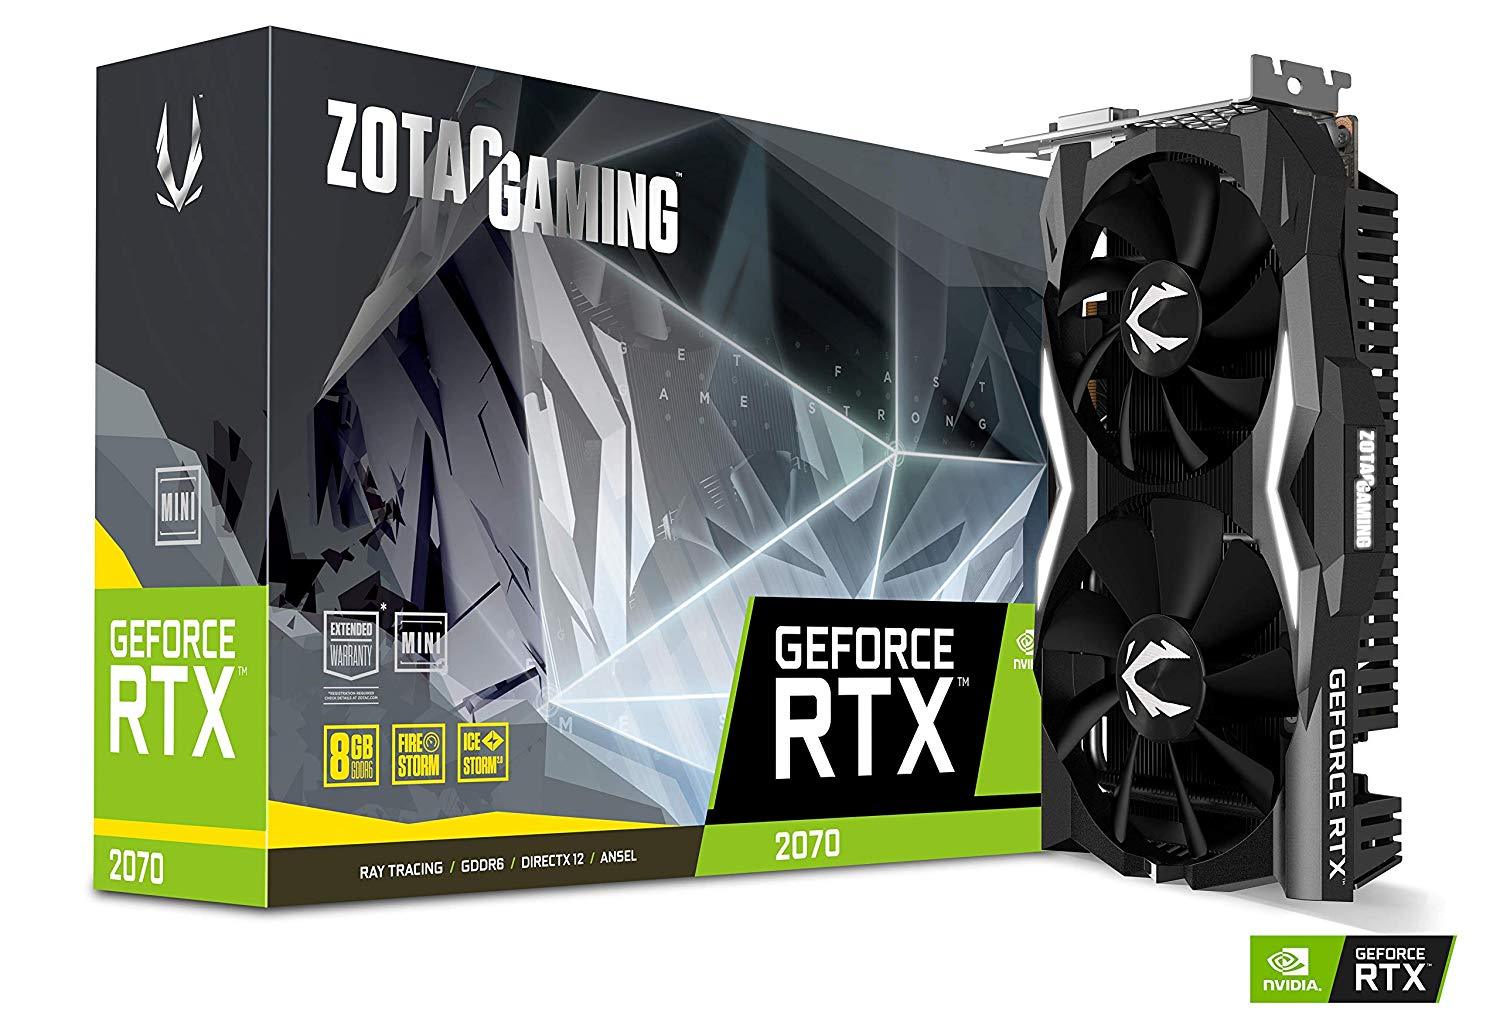 Zotac Gaming GeForce RTX 2070 Mini 8GB GDDR6 256 Bit 2.0 Graphics Card - Store 974 | ستور ٩٧٤